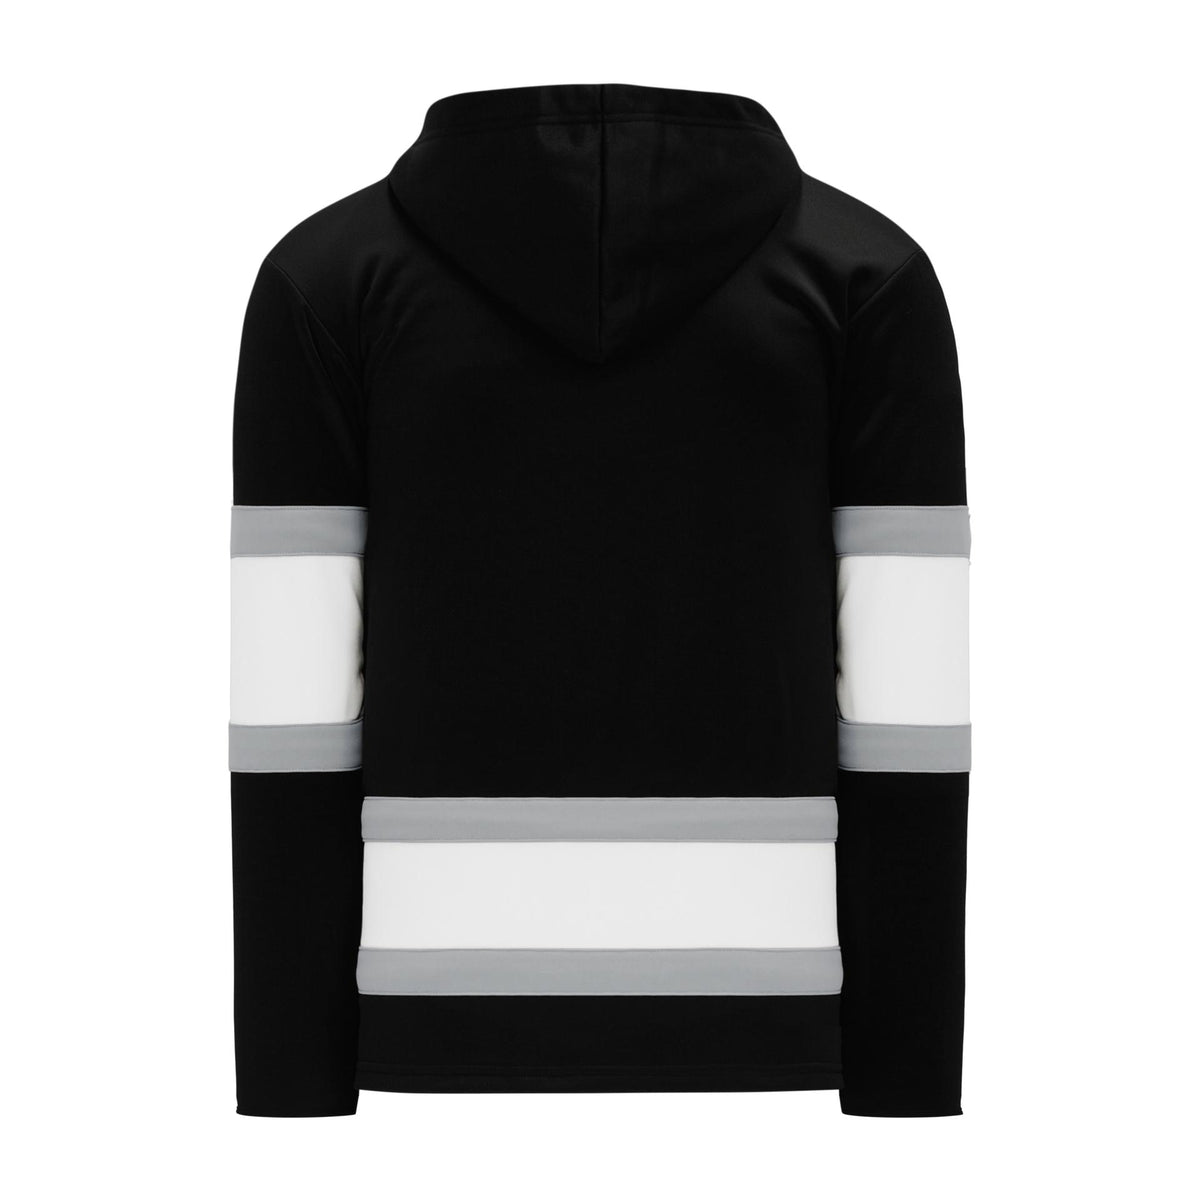 A1850-498 Boston Bruins Blank Hockey Lace Hoodie Sweatshirt